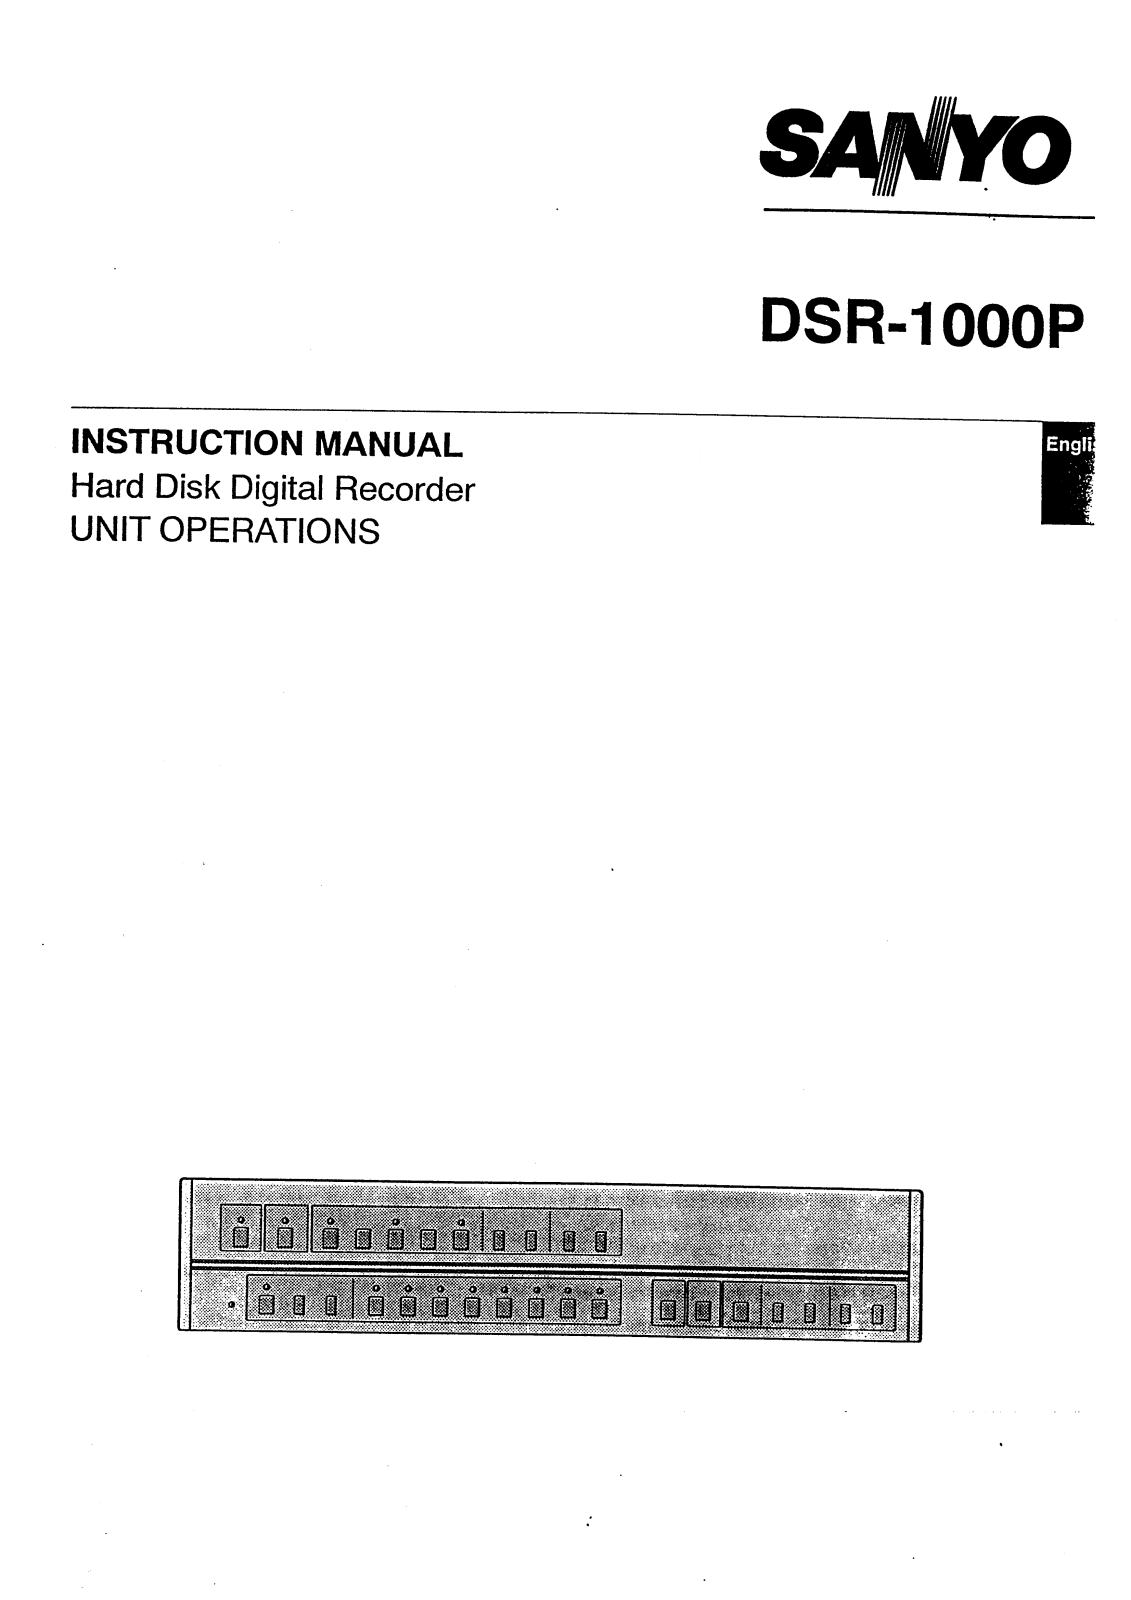 Sanyo DSR-1000P Instruction Manual